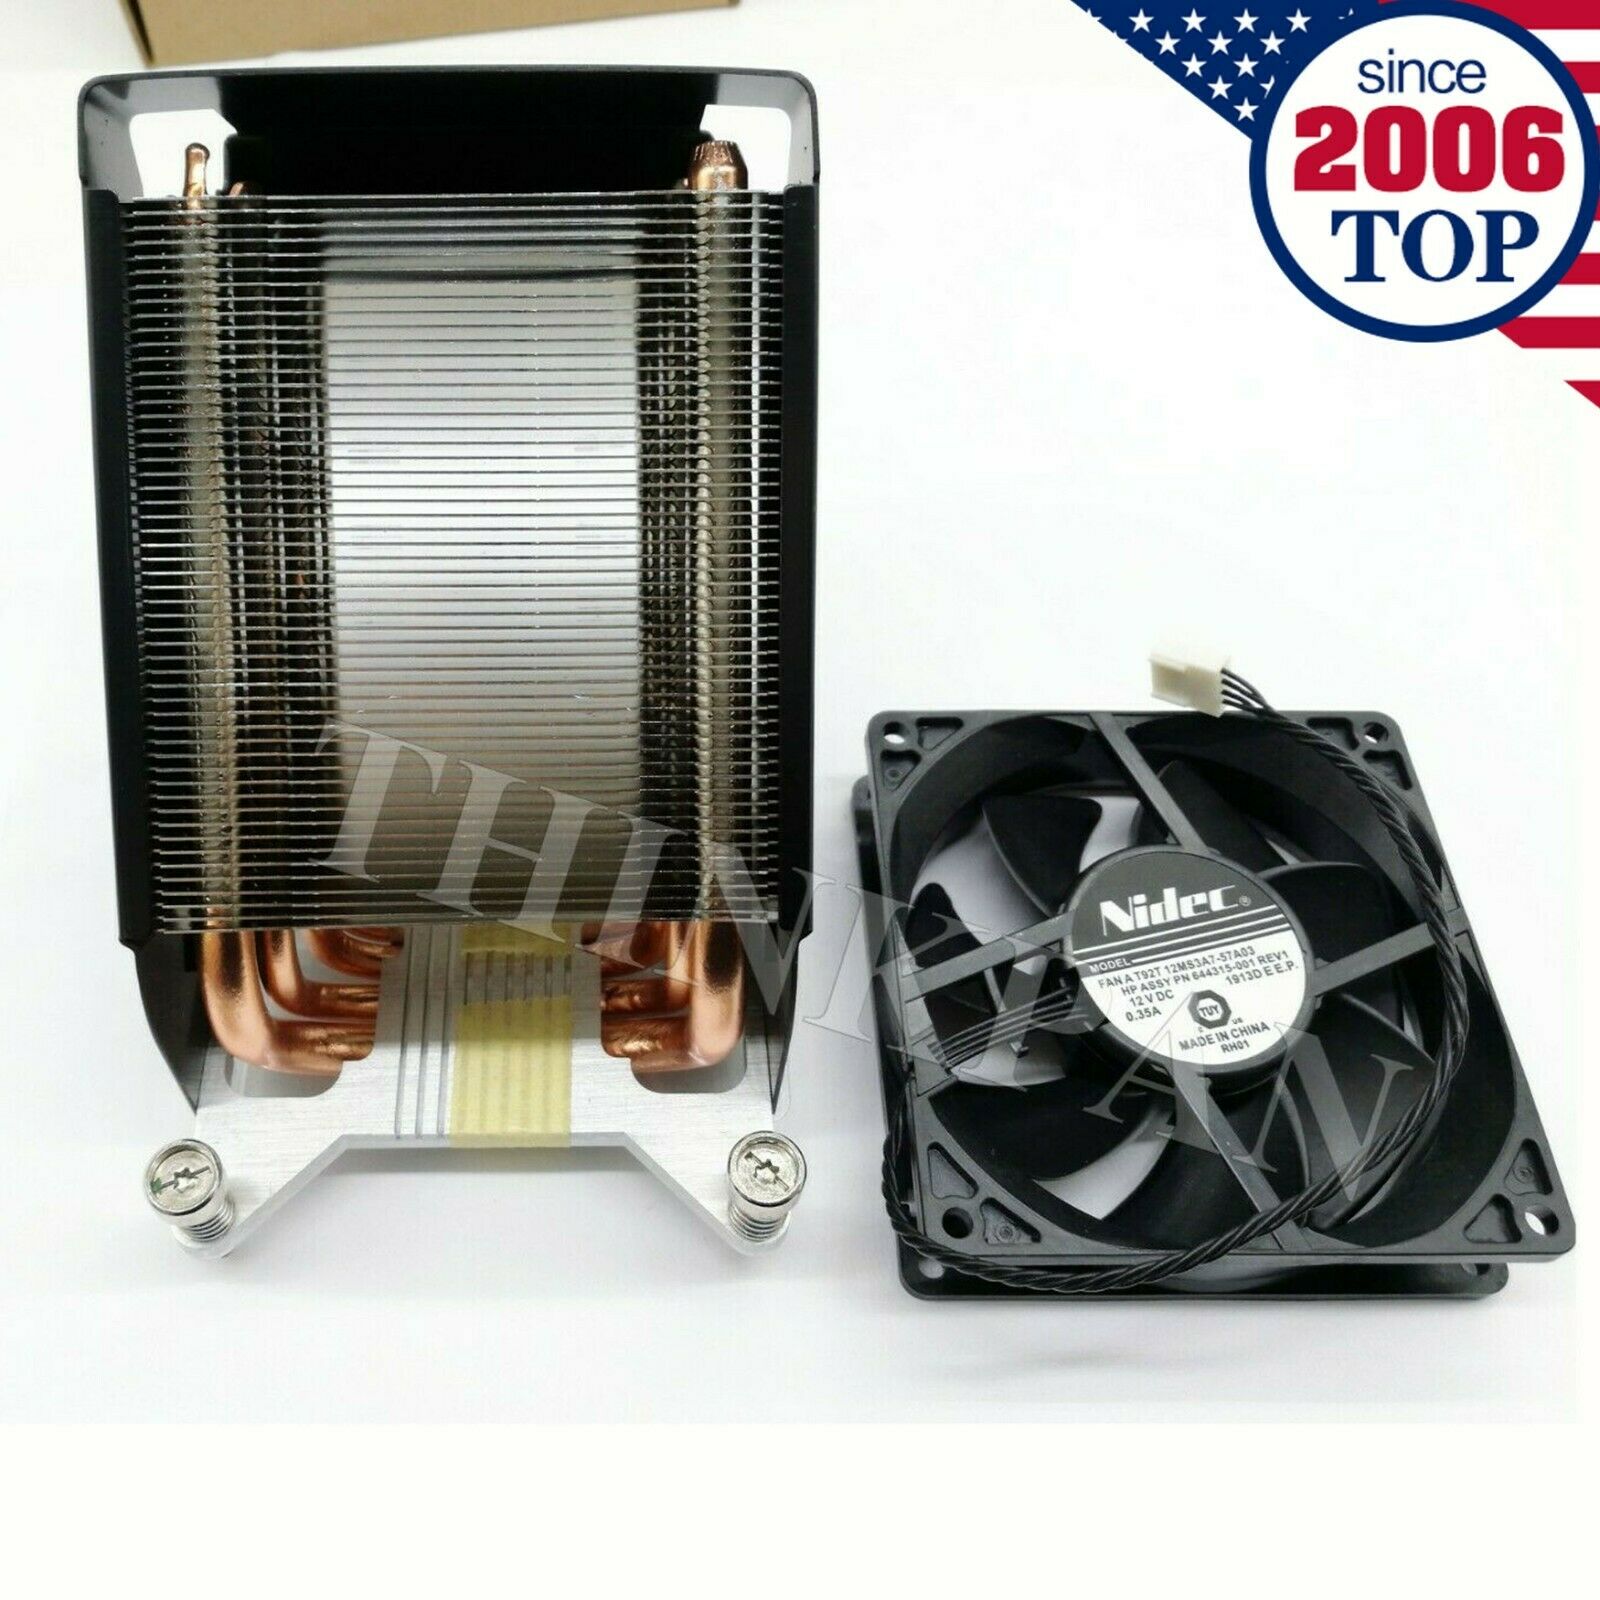      New Heatsink Kit for HP Z840 Z820 749598-001 782506-001 w/ Fan 647113-001 US